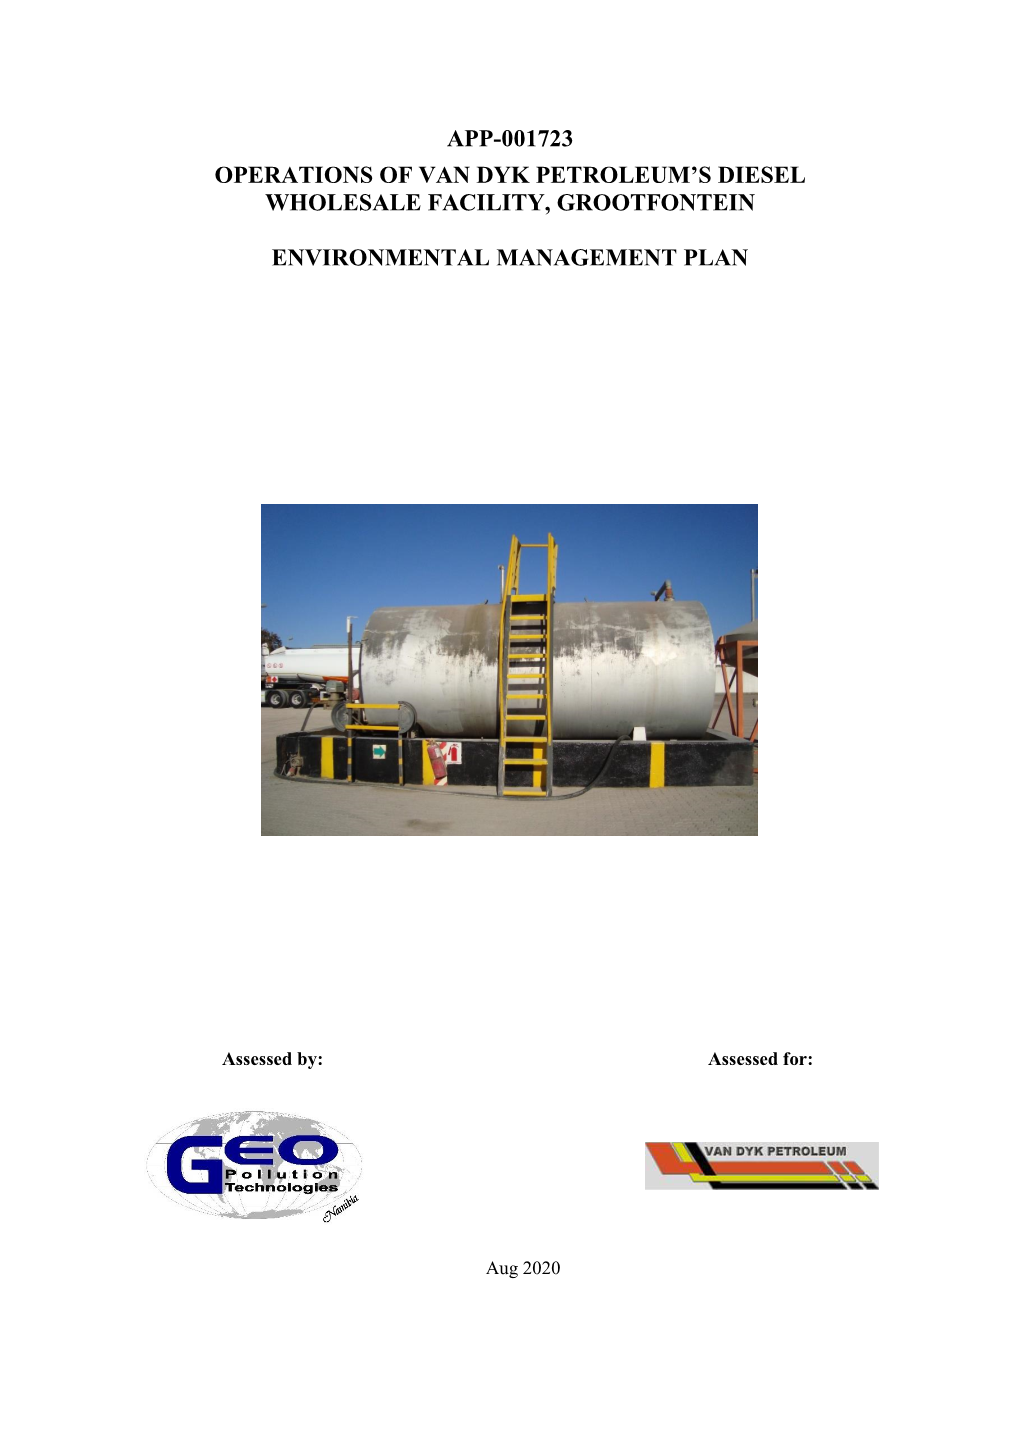 App-001723 Operations of Van Dyk Petroleum's Diesel